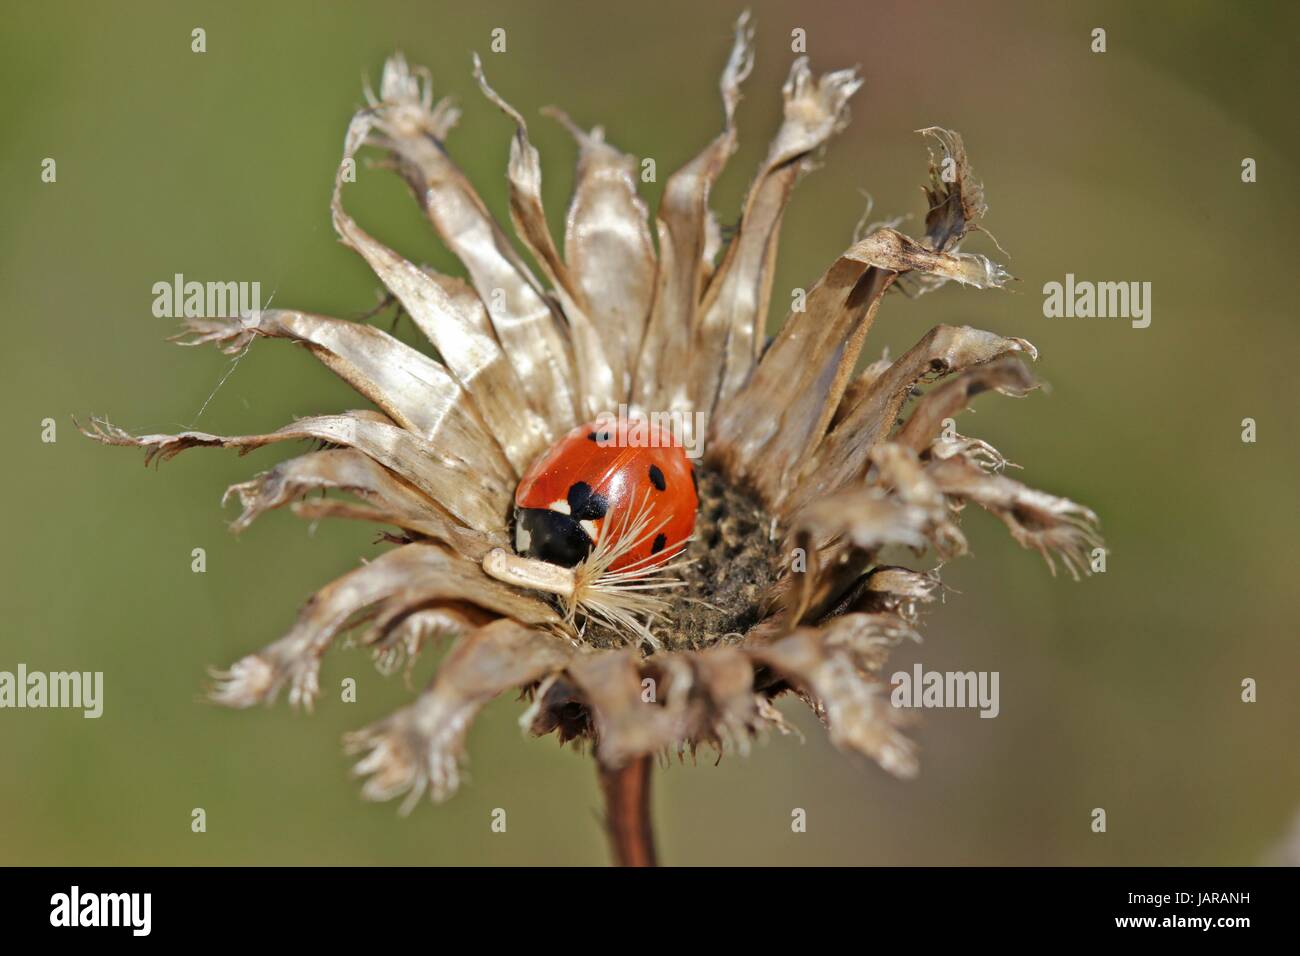 ladybug on withered greater knapweed Stock Photo